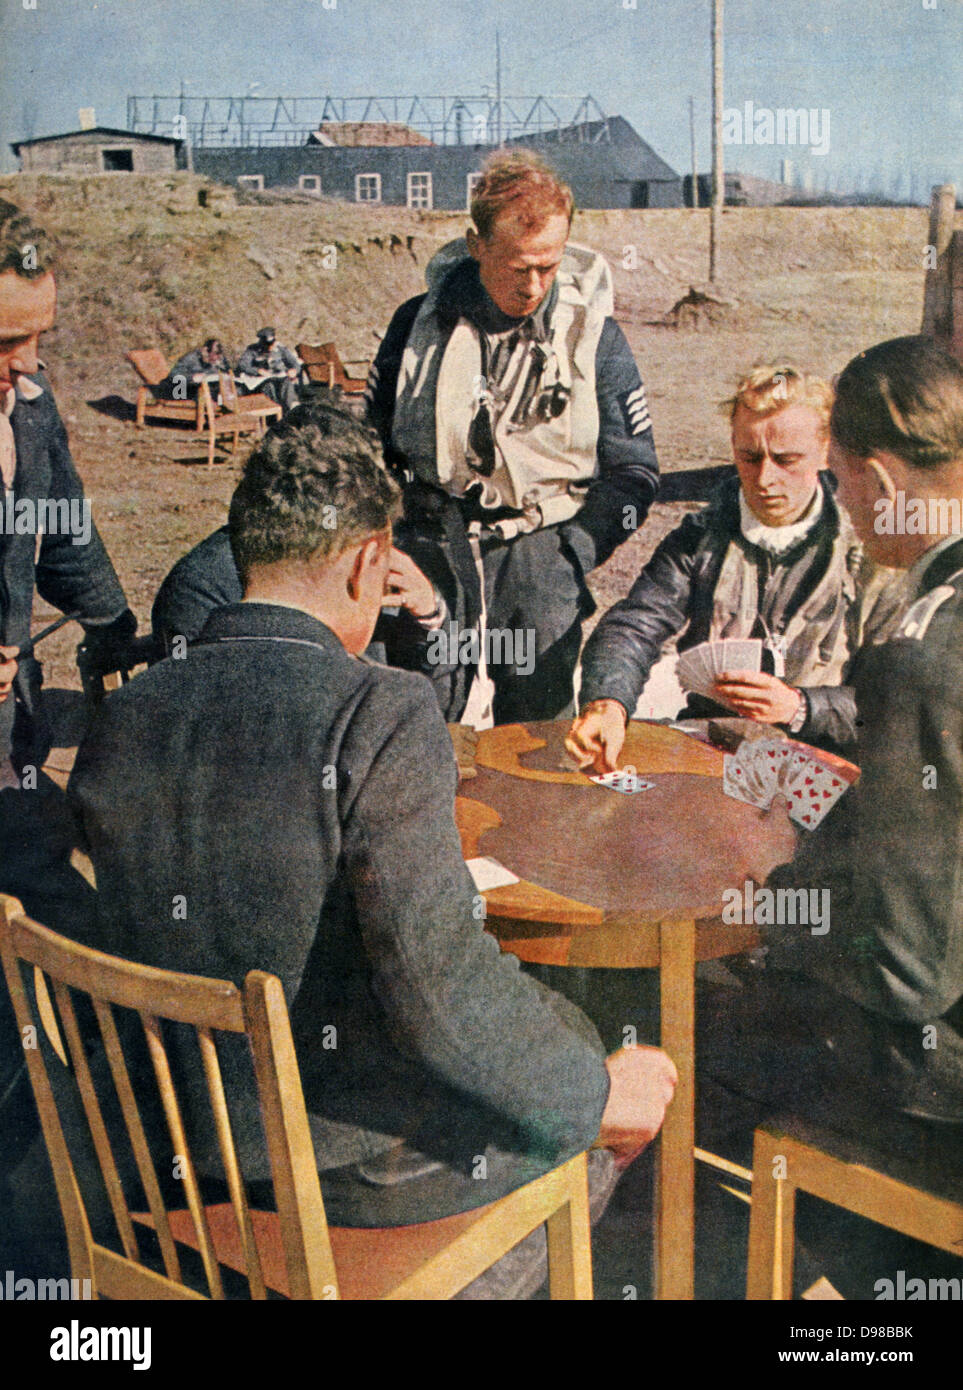 La Deuxième Guerre mondiale, 1939-1945 : les pilotes de chasse allemands dans le nord de la France se détendre et jouer aux cartes en attendant leur prochaine mission. À partir de 'Signal', avril 1943, revue de propagande allemande produite par la Wehrmacht. Banque D'Images